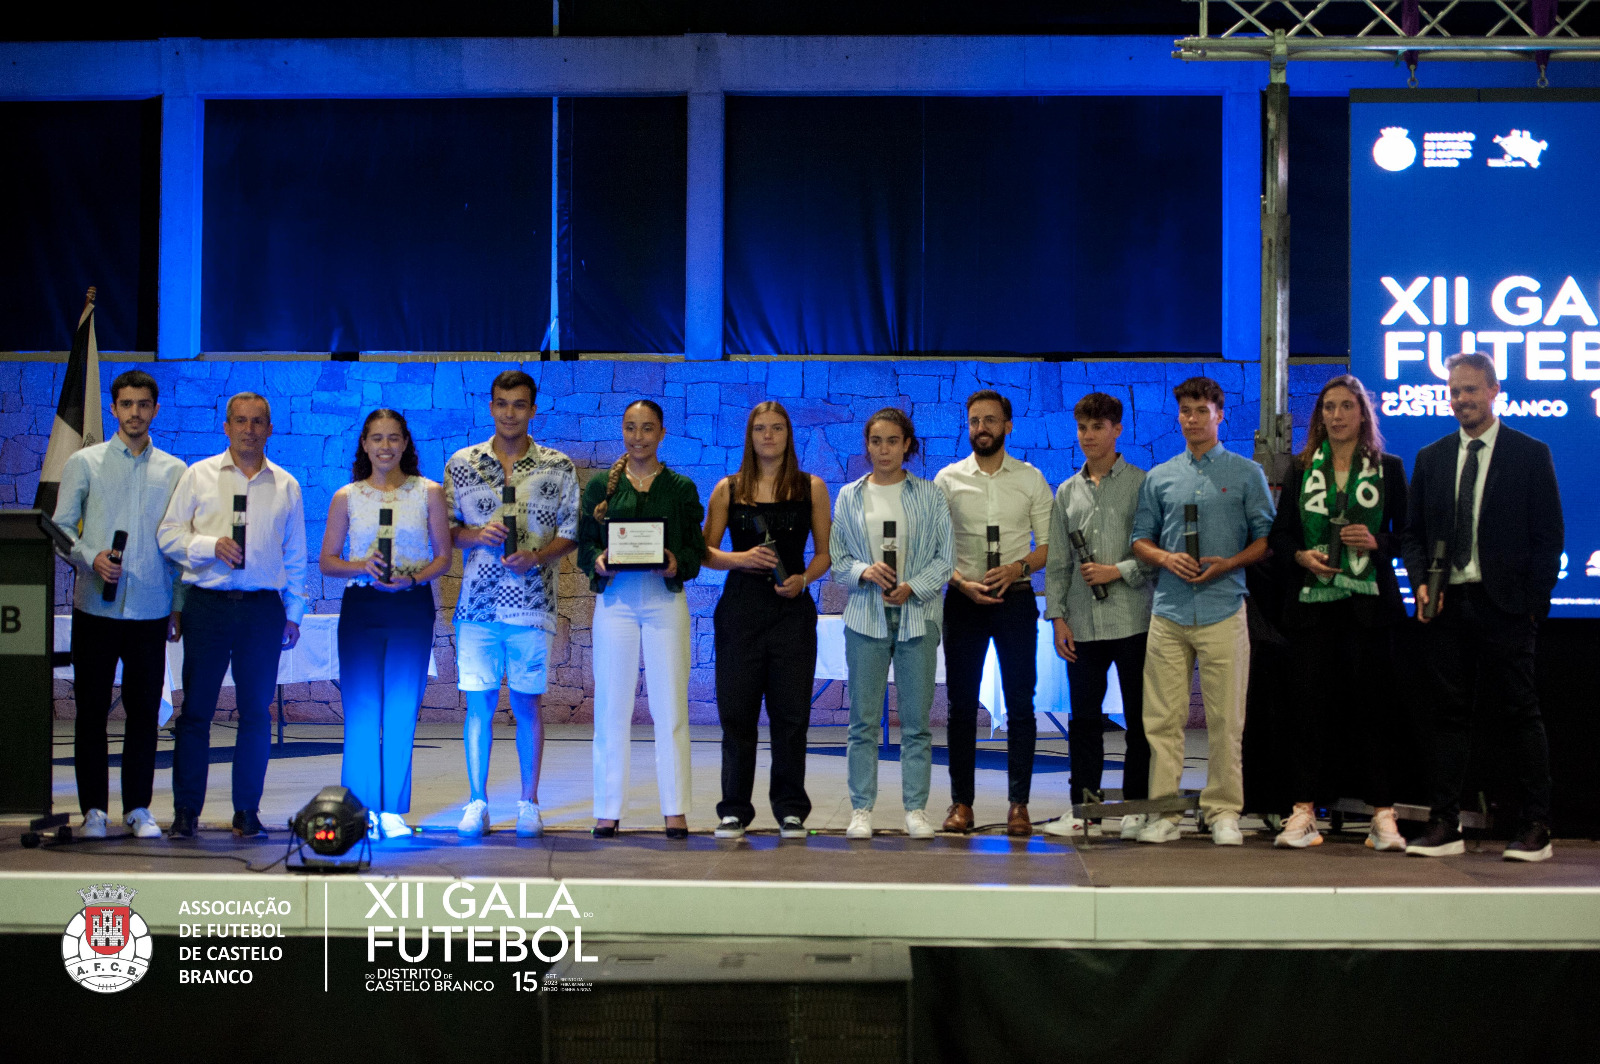 XII Gala do Futebol Distrital: Os Vencedores